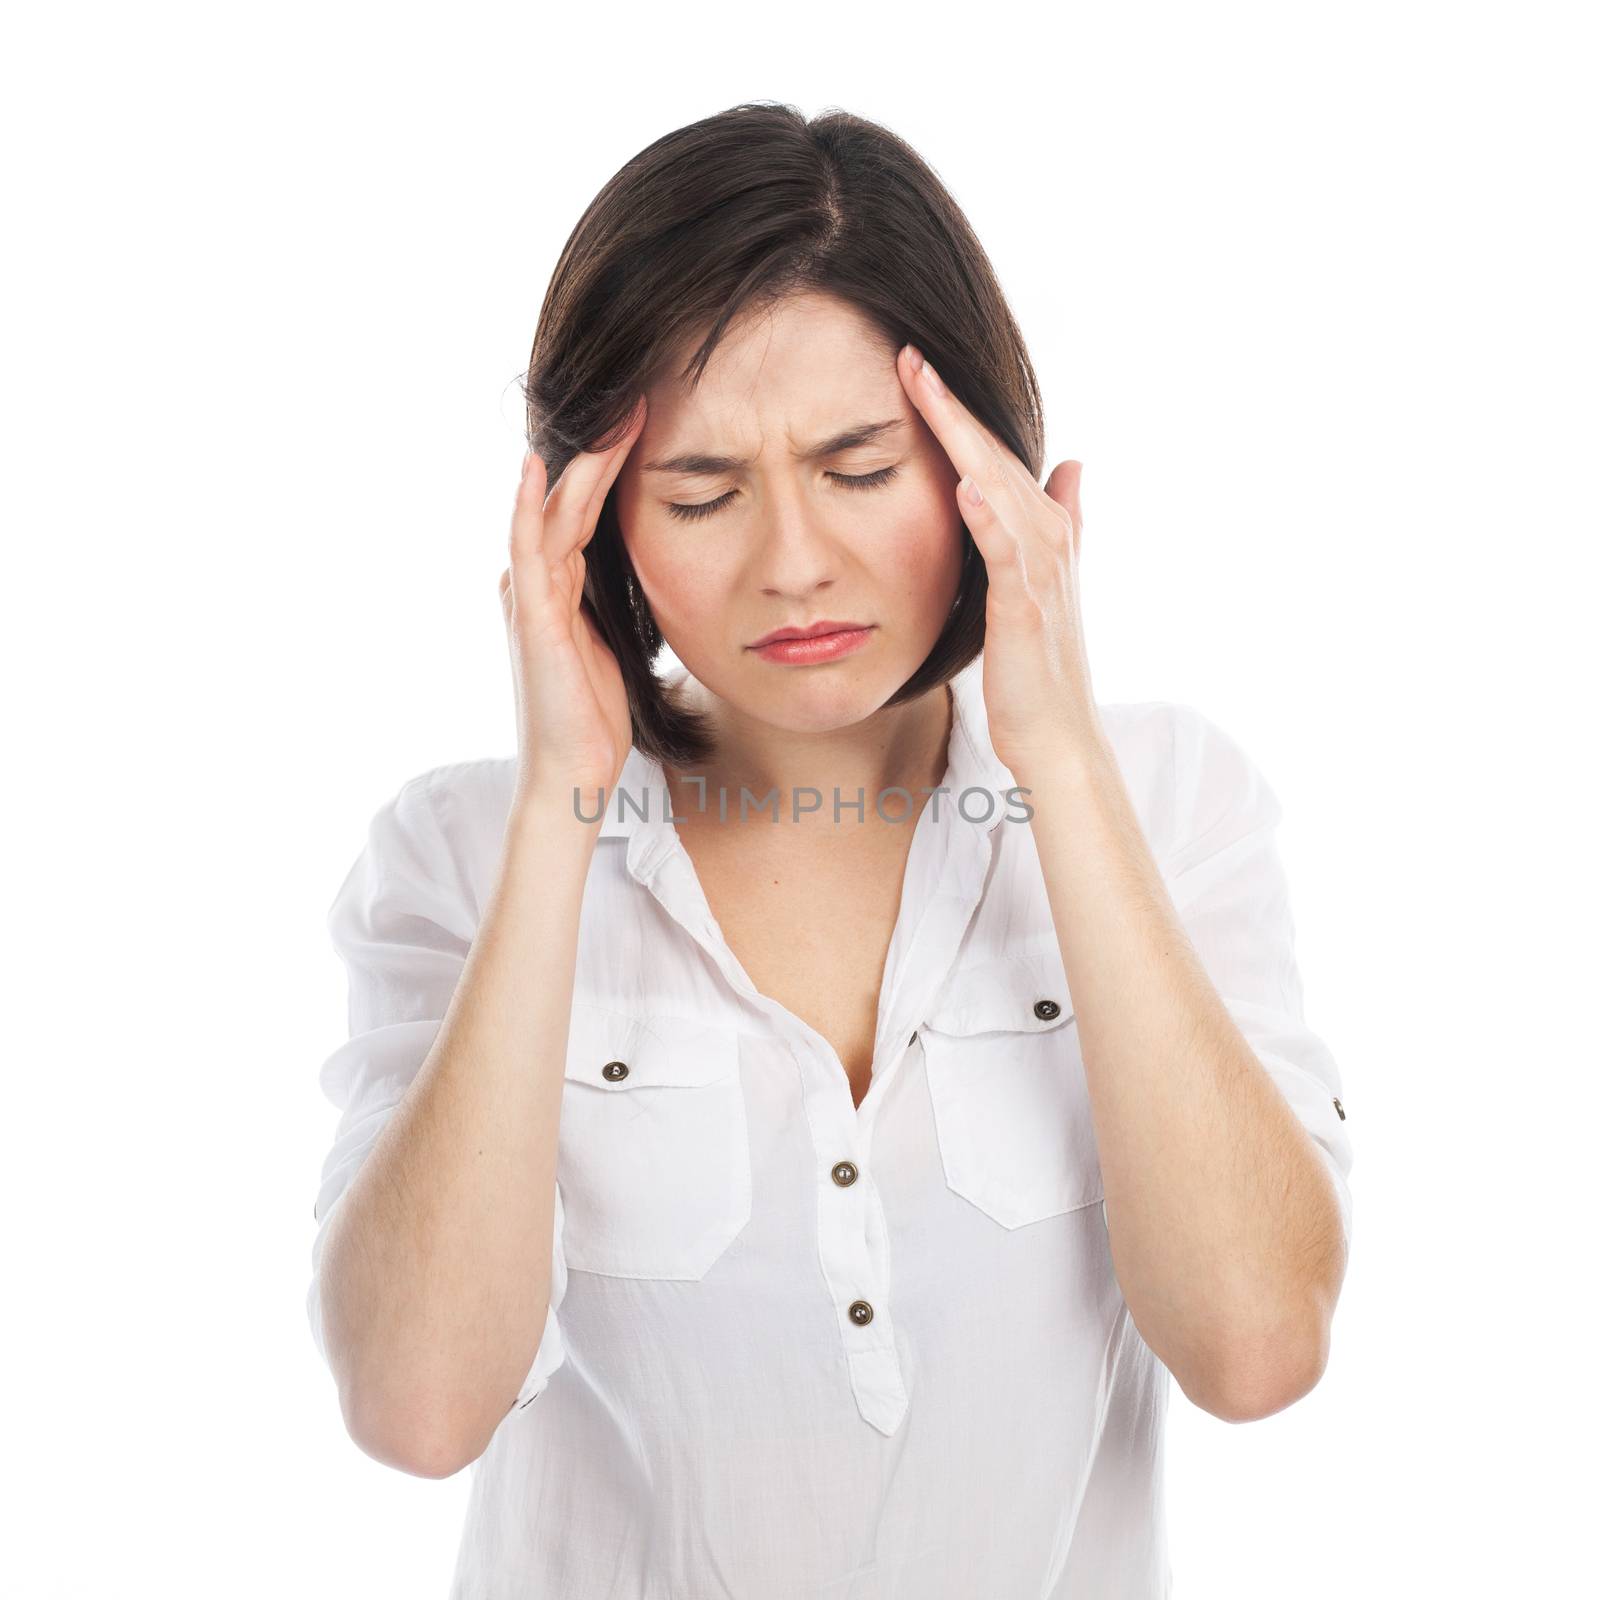 Woman having a headache by TristanBM